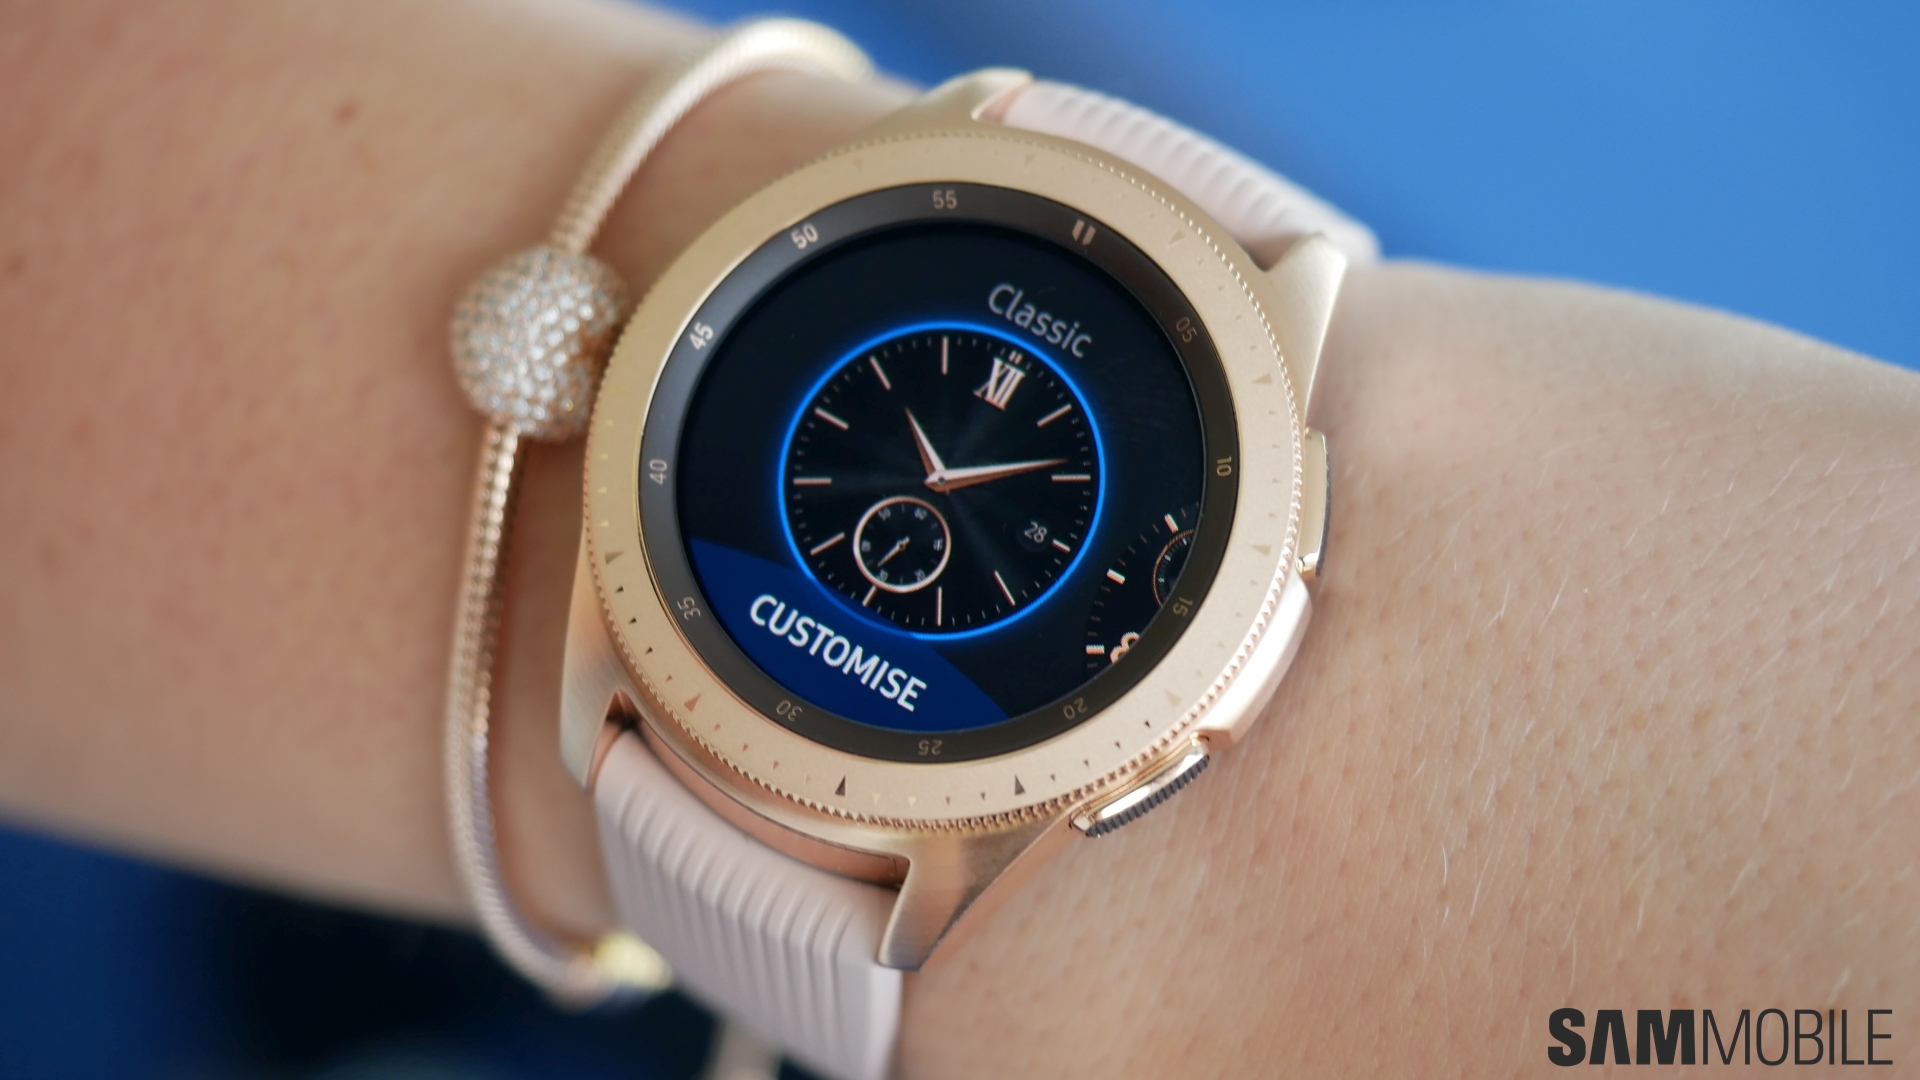 Samsung galaxy watch gold 40mm. Samsung Galaxy watch r810. Samsung Galaxy watch SM-r810. Samsung Galaxy watch 42mm SM r810. Samsung watch SM R 810.